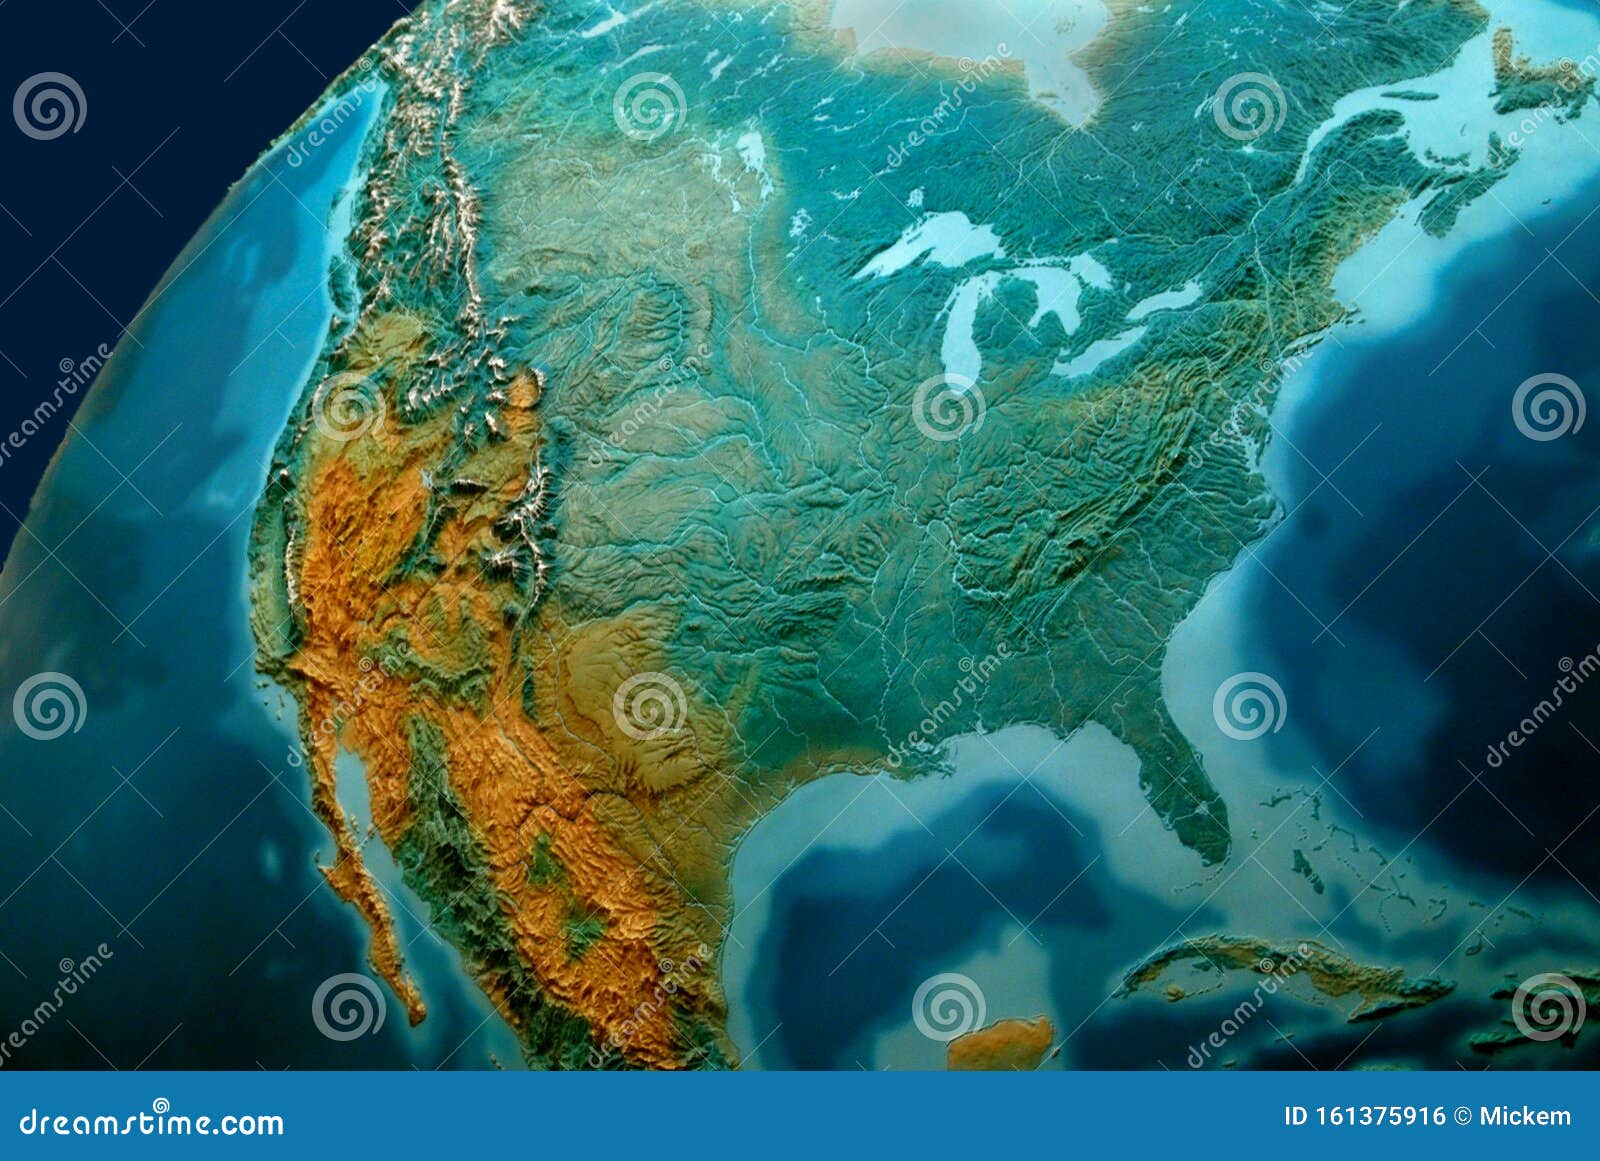 relief globe planet earth north america